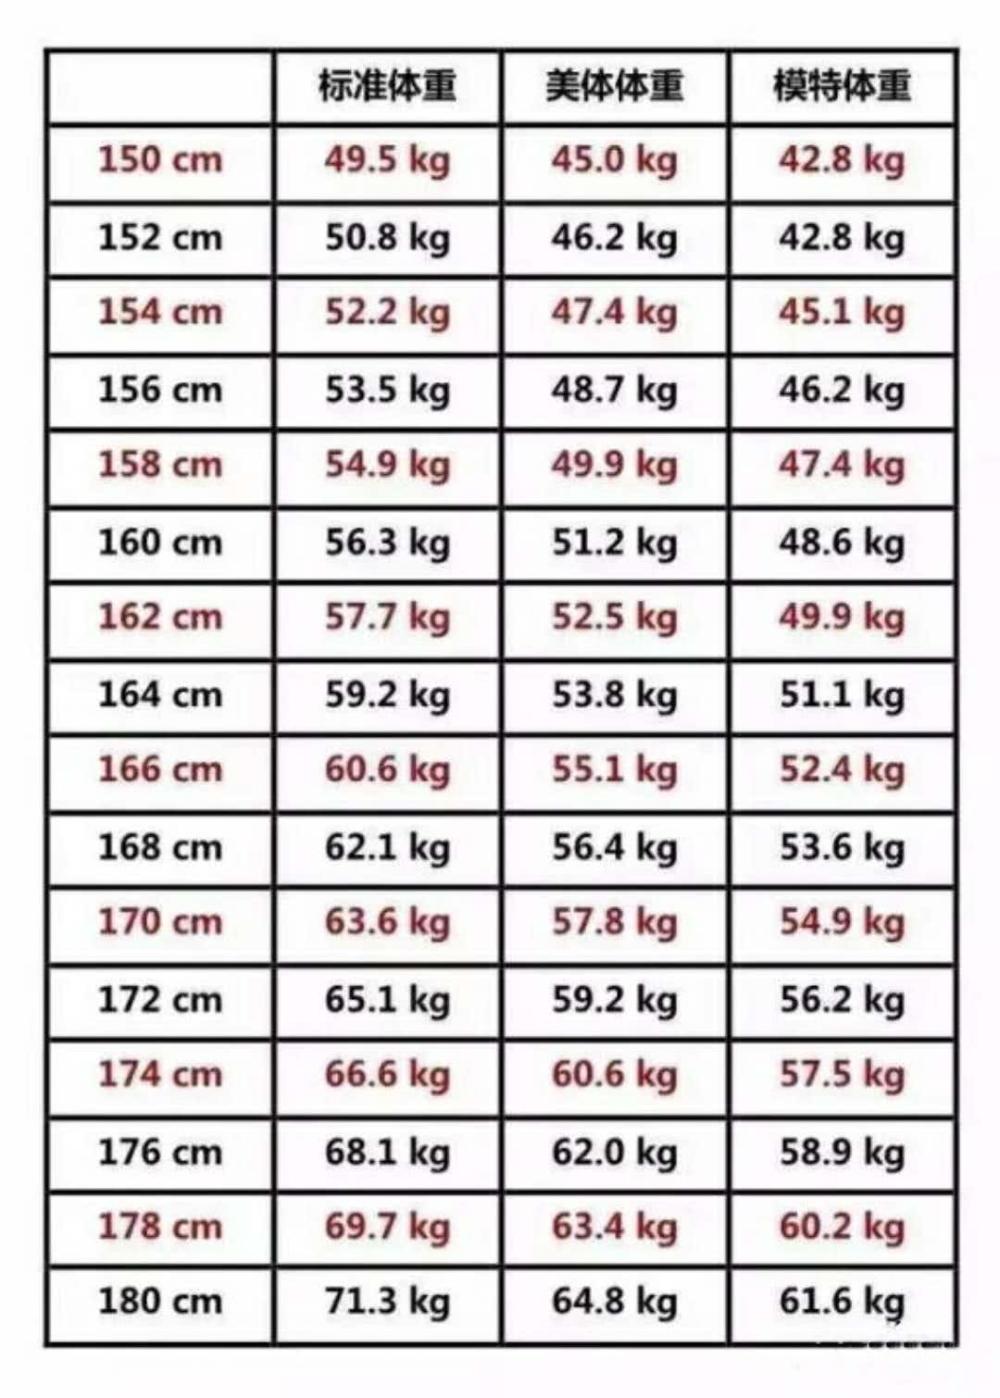 女性的体重和身高, 多少比较合适?